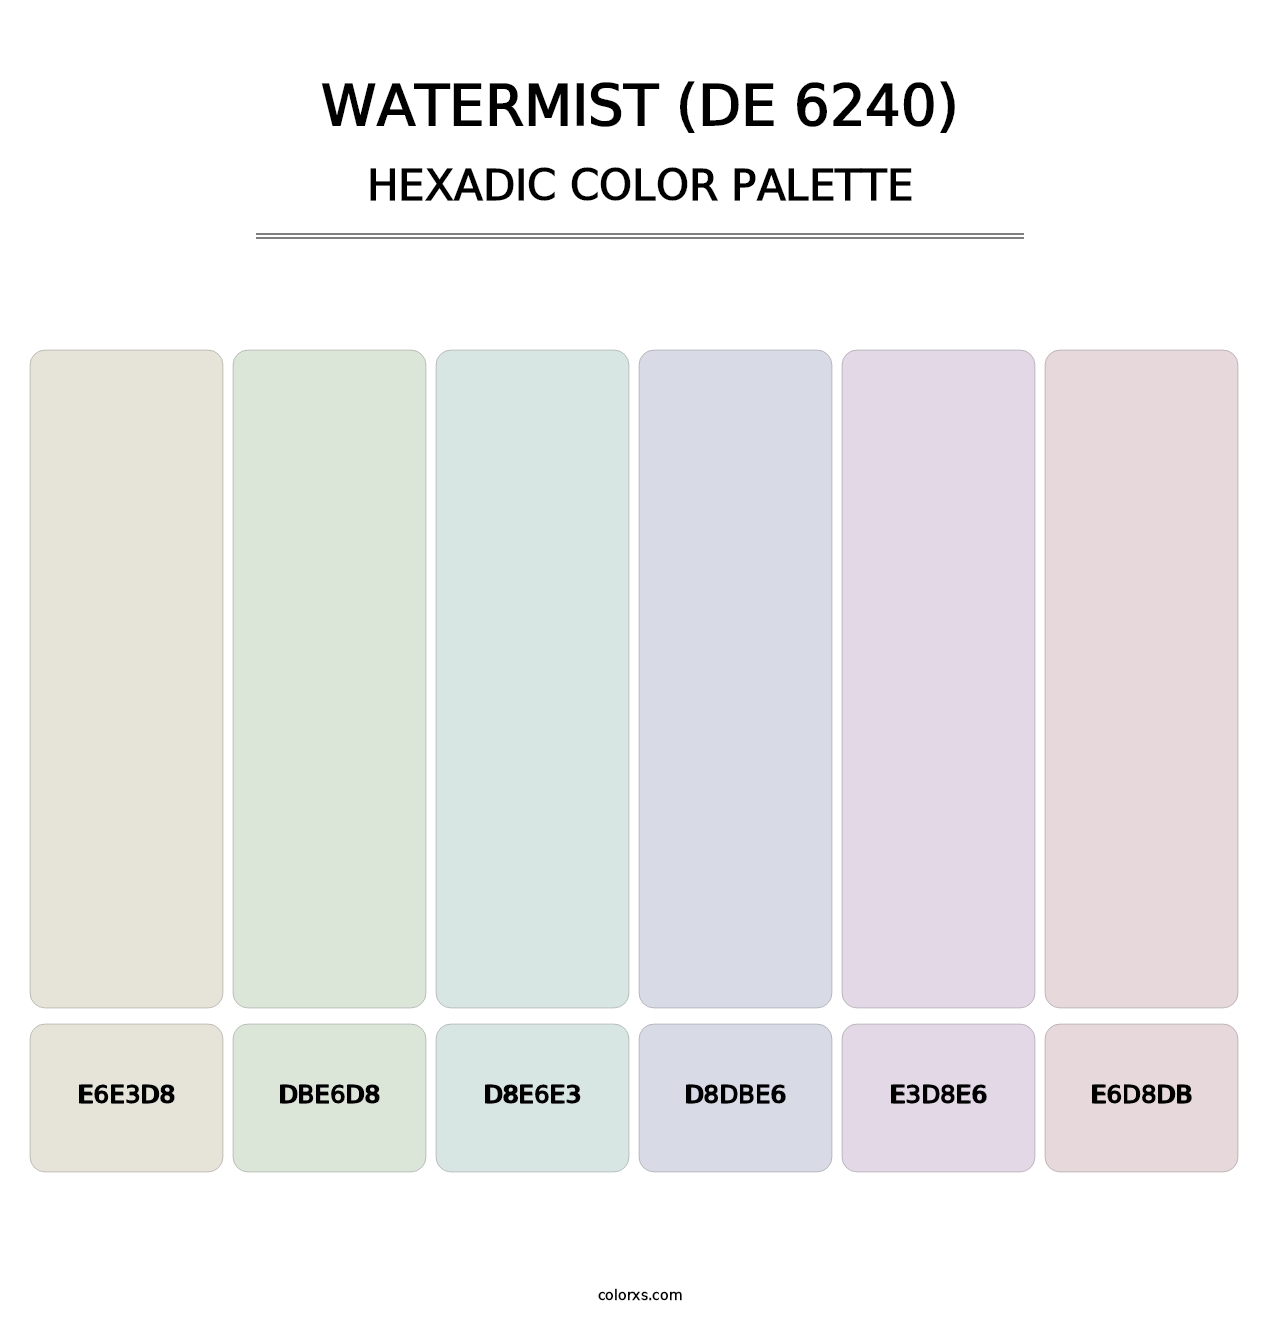 Watermist (DE 6240) - Hexadic Color Palette